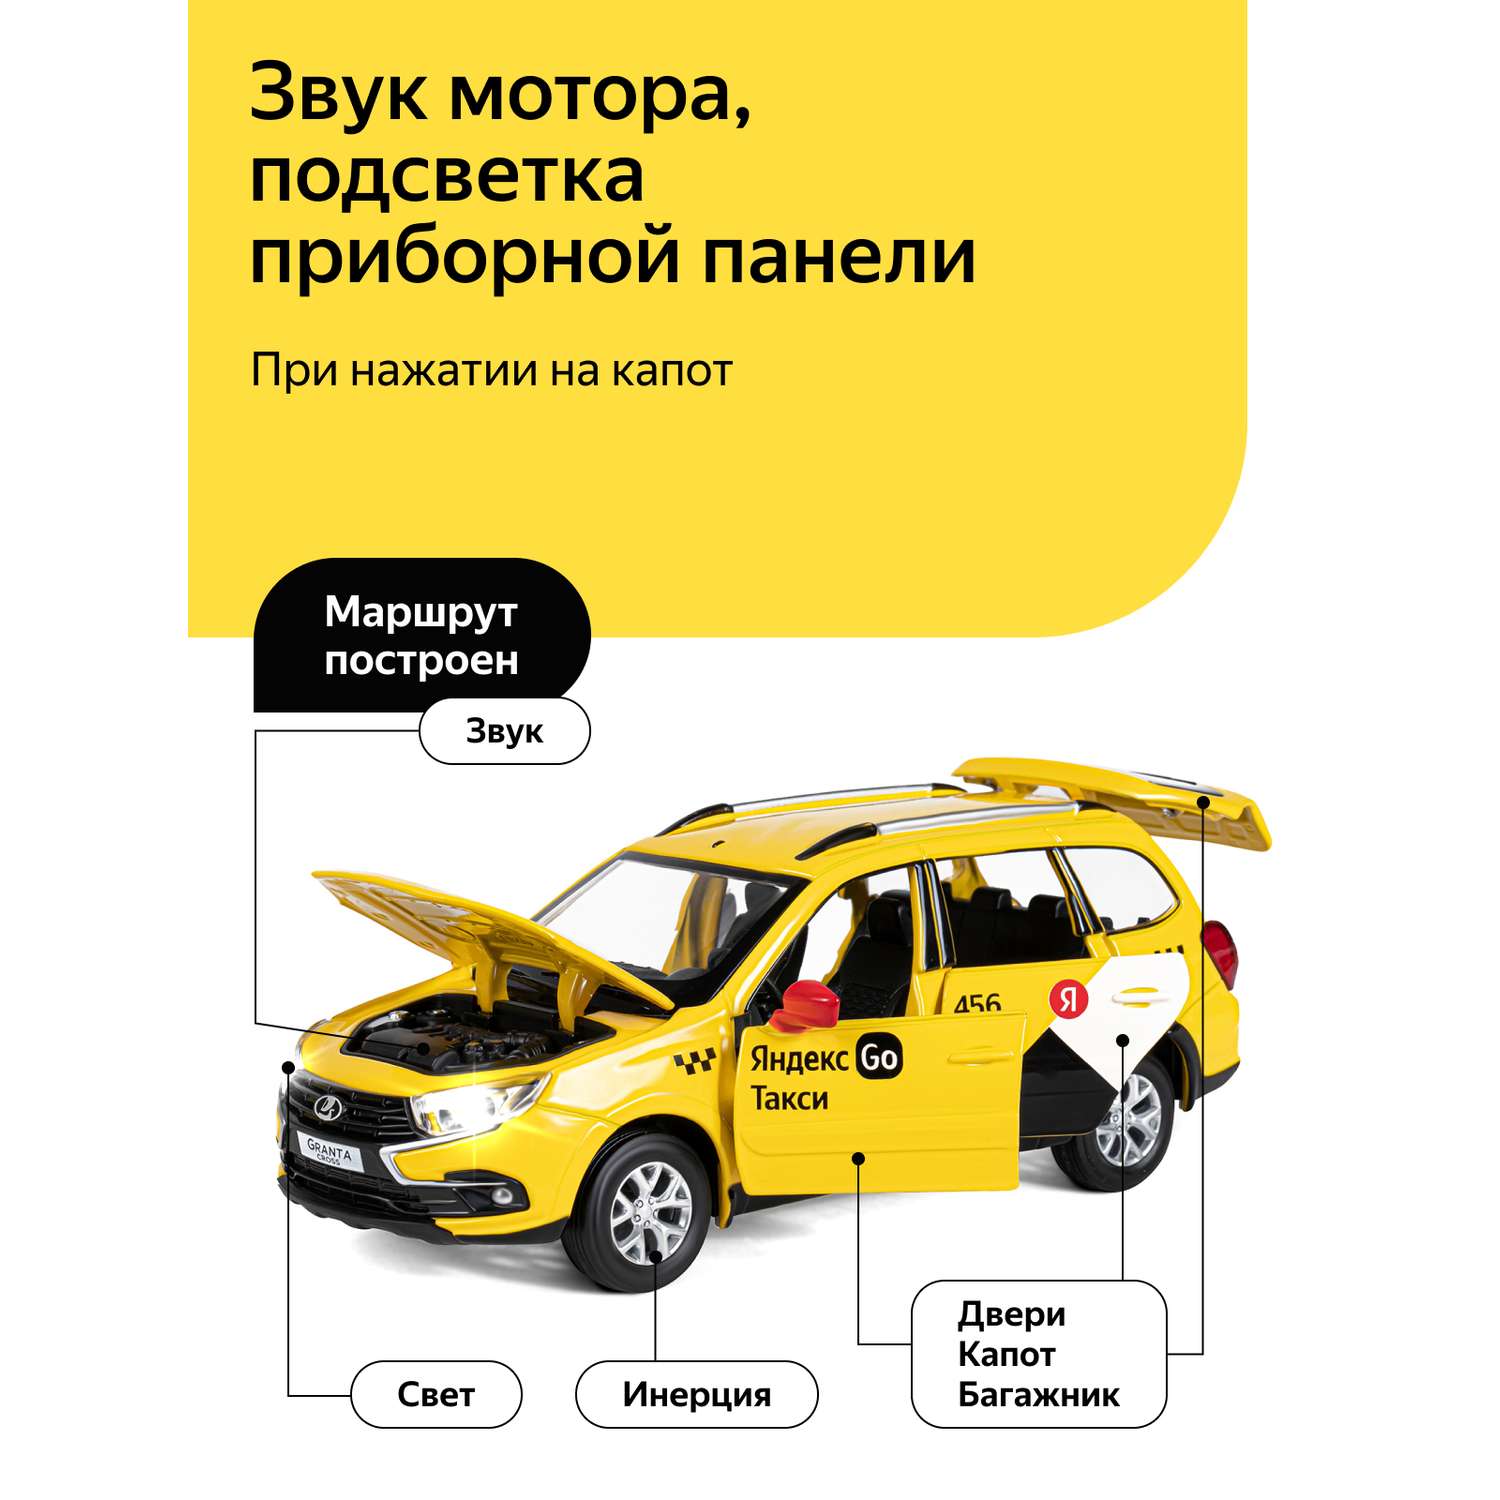 Машинка металлическая Яндекс GO игрушка детская 1:24 Lada Granta Cros желтый инерционная JB1251347/Яндекс GO - фото 2